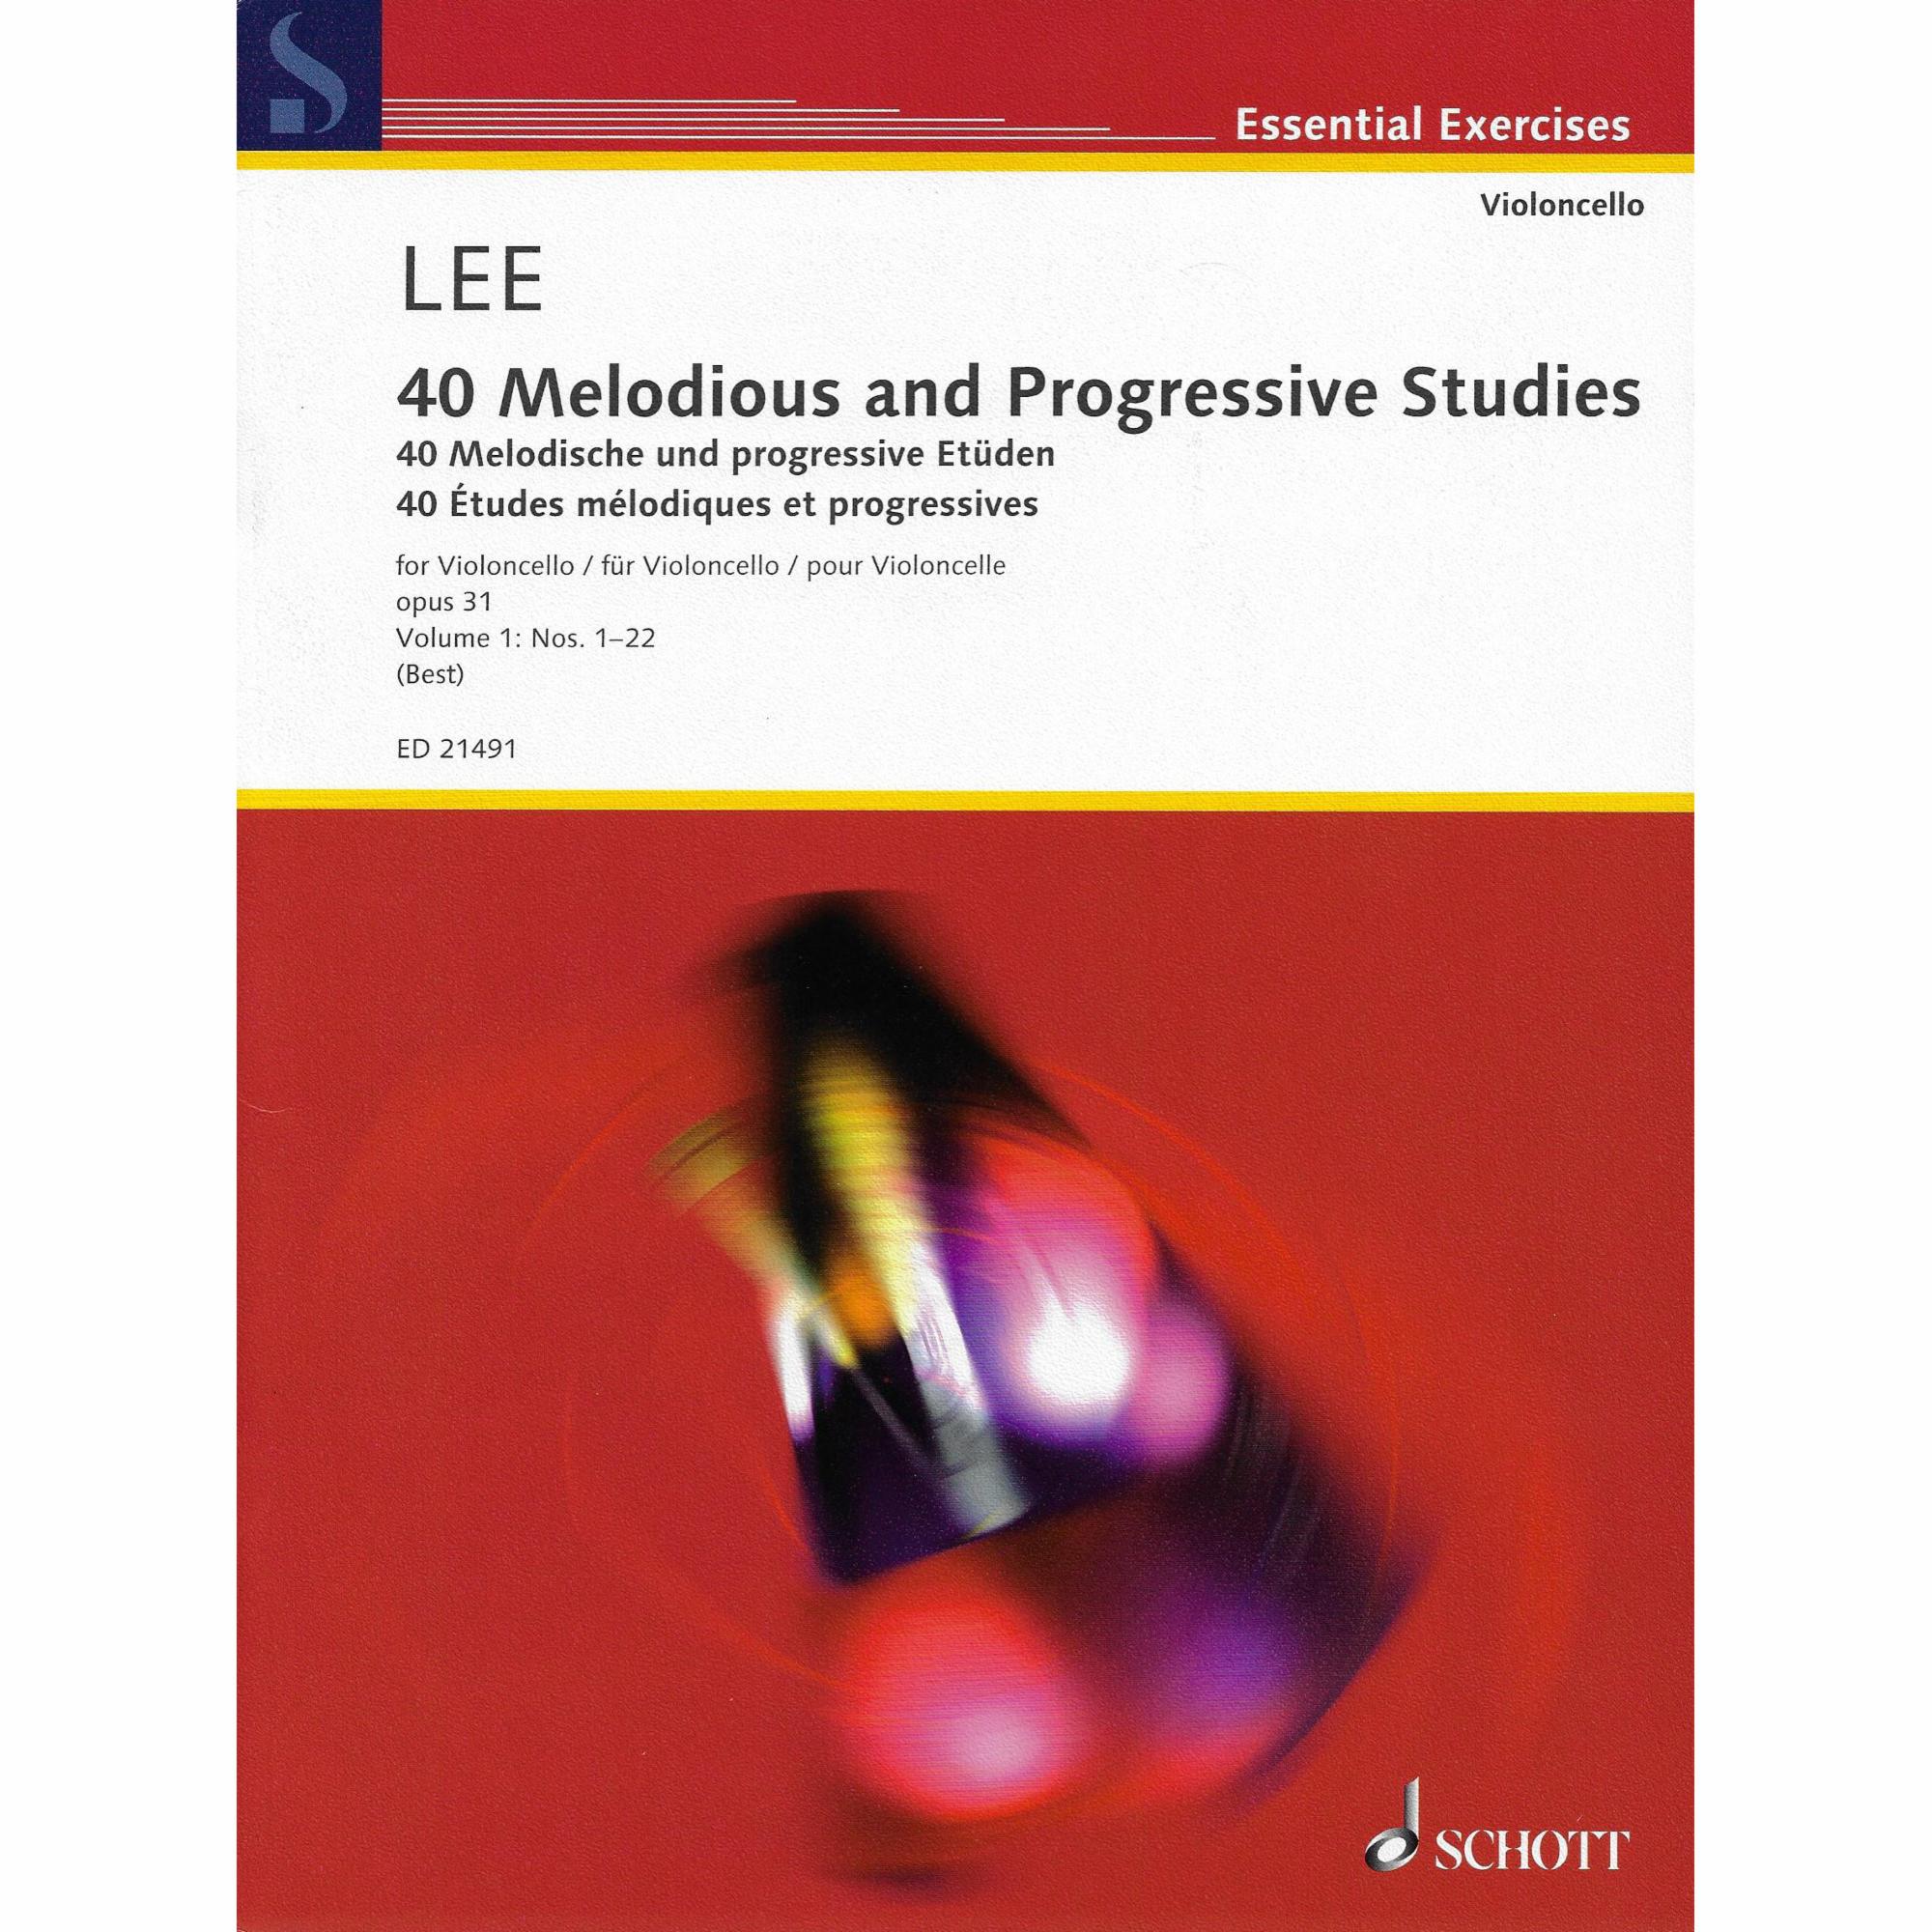 Lee -- 40 Melodious and Progressive Studies, Op. 31, Vols. 1-2 for Cello, Vol. I